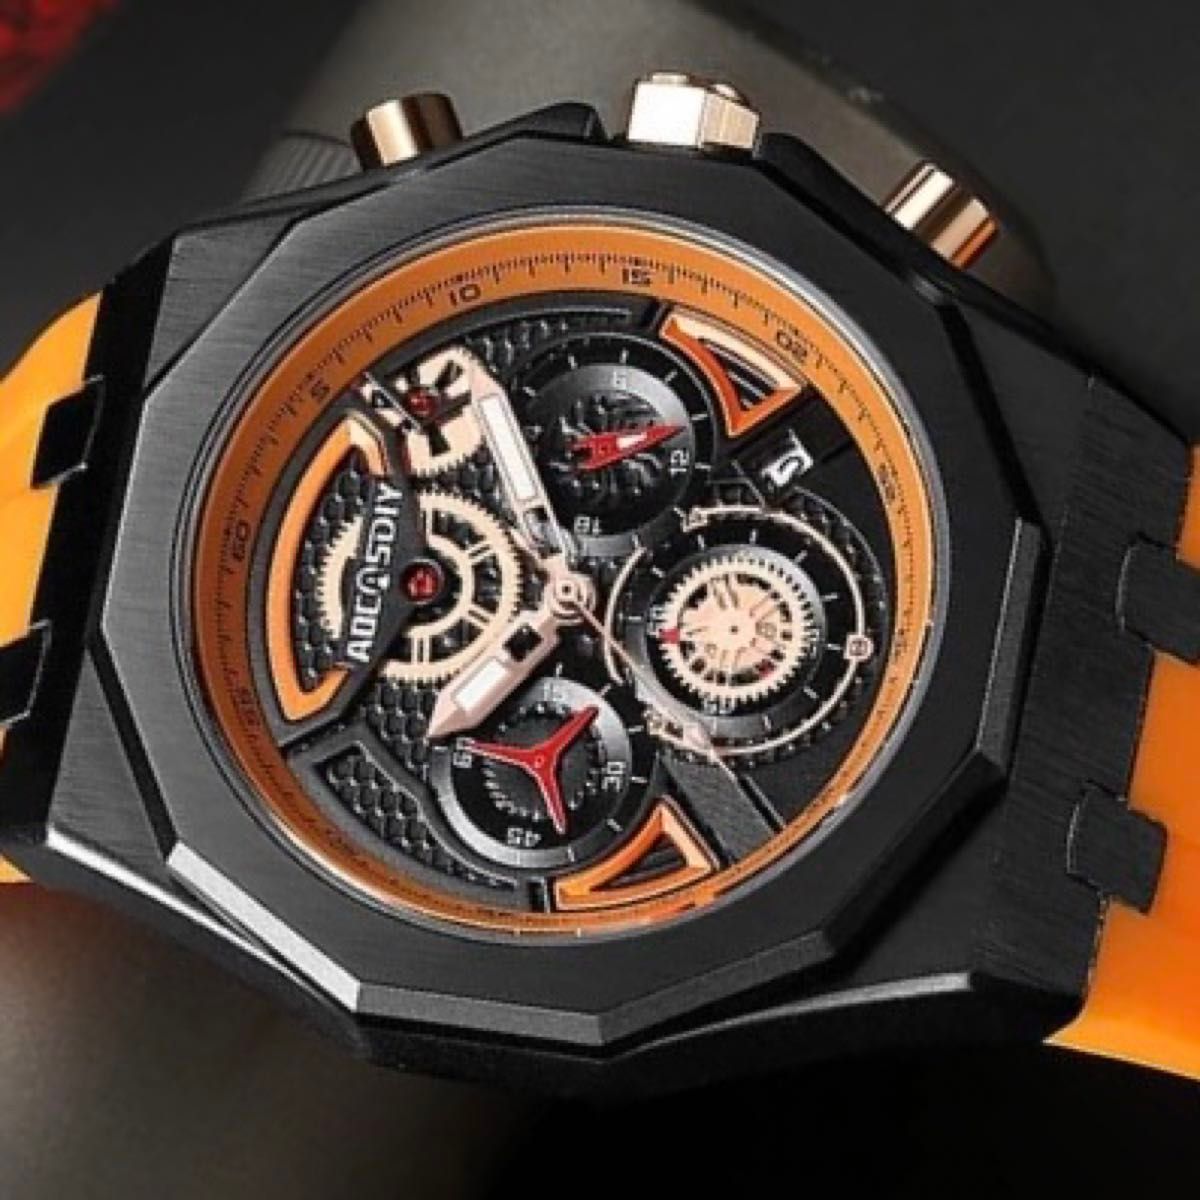 新品 AOCASDIY オマージュクロノグラフ ウォッチ ラバーストラップ メンズ腕時計 オレンジ